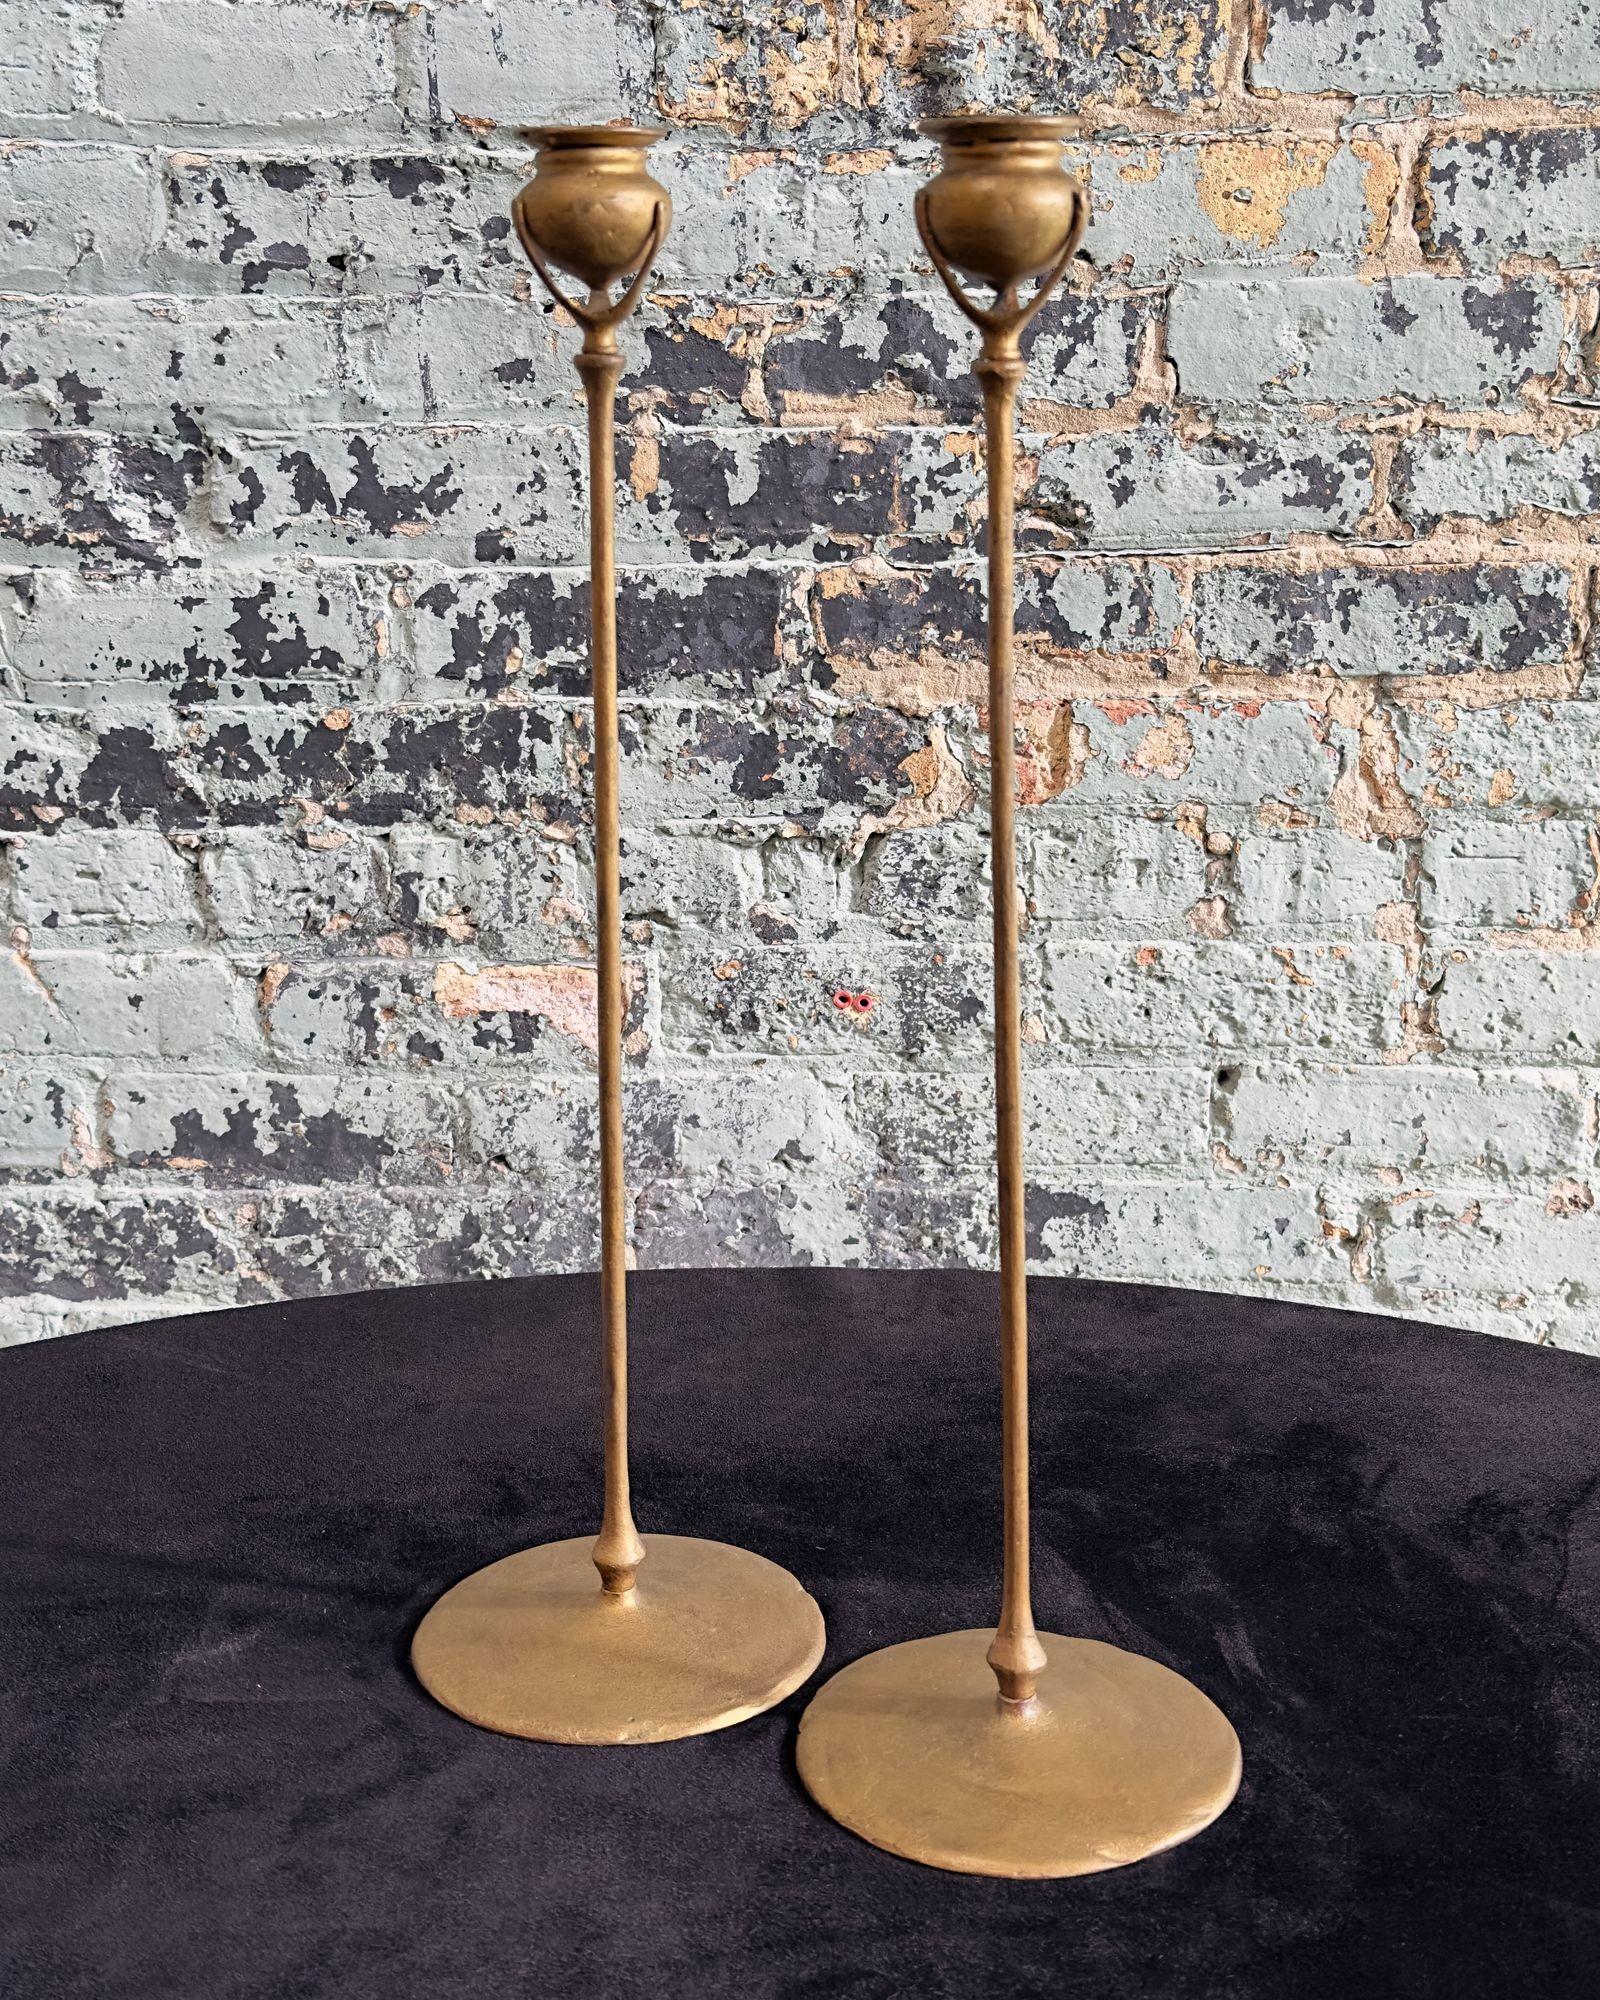 Bougeoirs en bronze doré 1213 de Tiffany Studios New York.
Étonnante paire de chandeliers en bronze doré, modèle 1213 vers 1900. Estampillé Tiffany Studios New York.
Les chandeliers mesurent 20,25